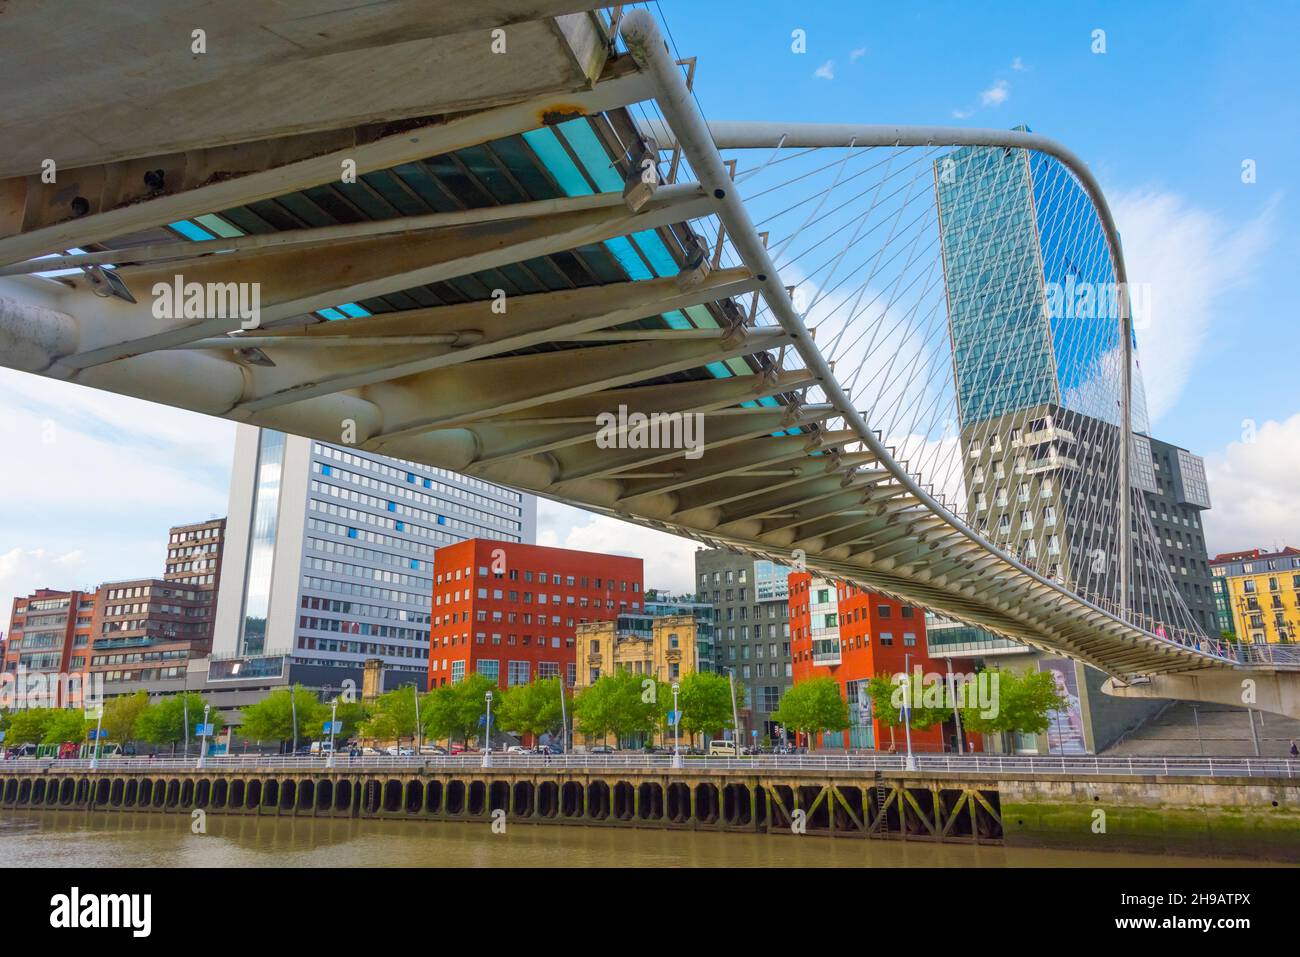 Zubizuri-Brücke (Campo Vlantin-Brücke oder Puente del Campo Vlantin, eine Fußbrücke mit gebundener Bögen über den Fluss Nervion, entworfen vom Architekten Santiago Cala Stockfoto